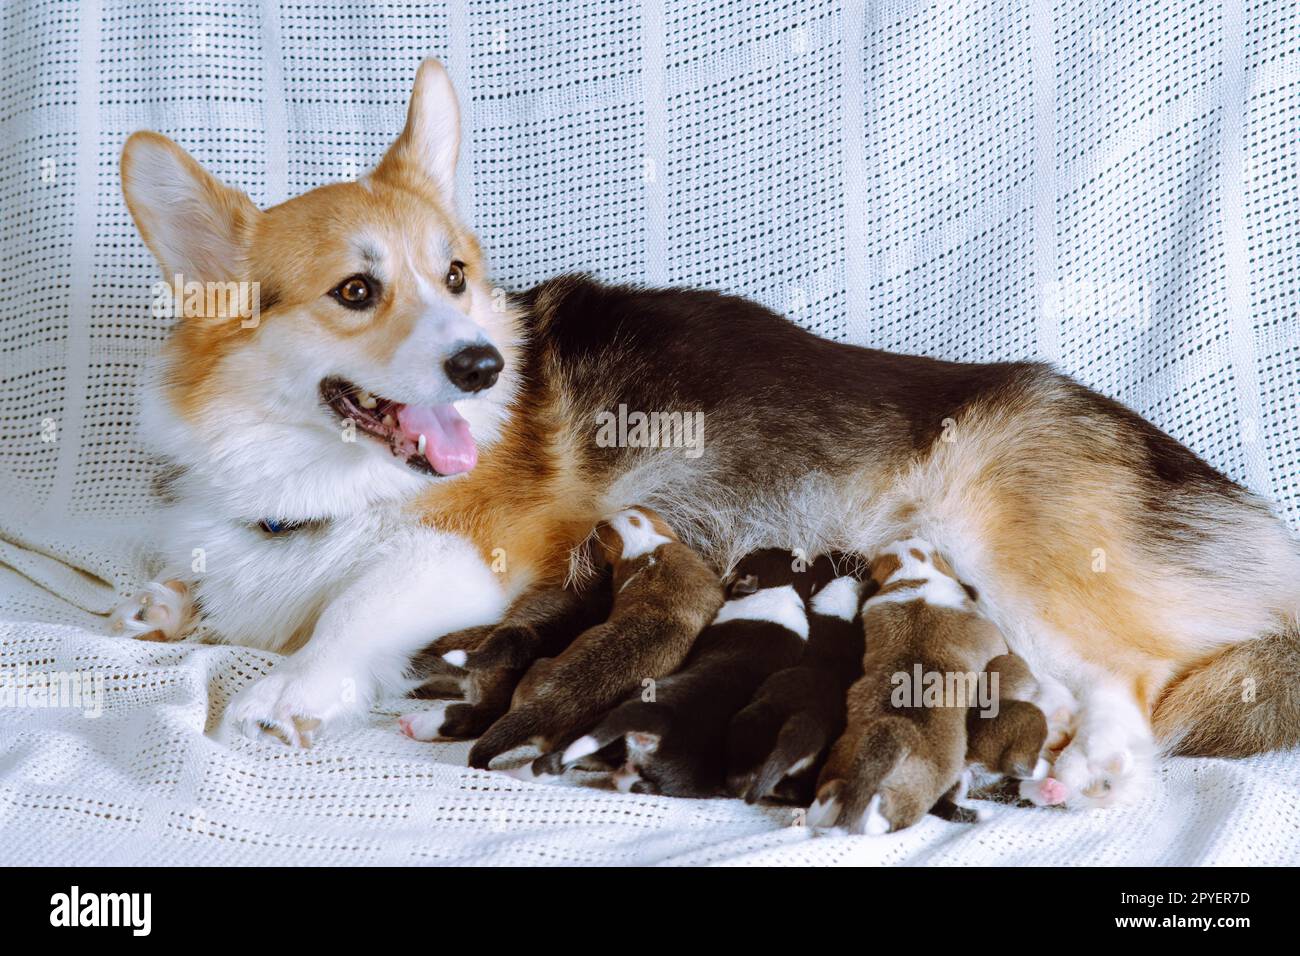 Mignon chien corgi gallois tricolore aux cheveux rouges allaitant de petits chiots avec du lait, allongé sur une couverture blanche. Soins et amour Banque D'Images